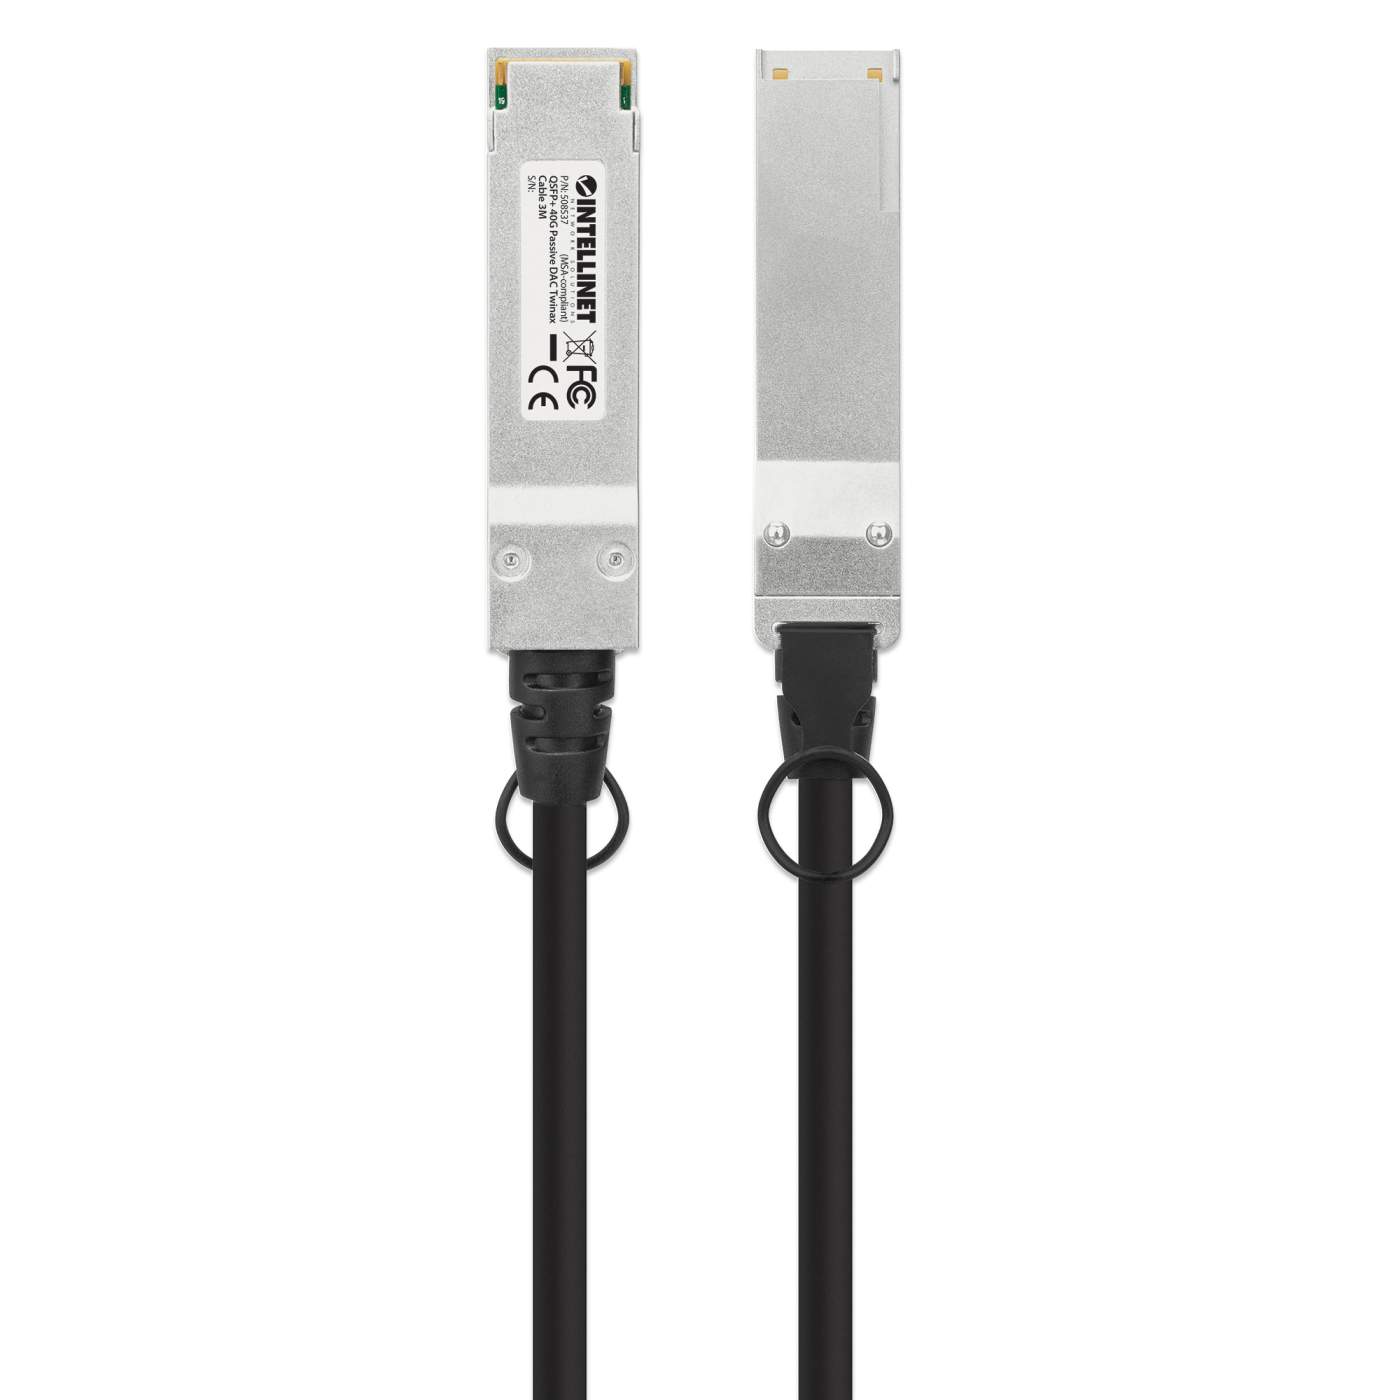 QSFP+ Intellinet 40G DAC Deutschland Intellinet Twinax-Kabel Passives (508537) –